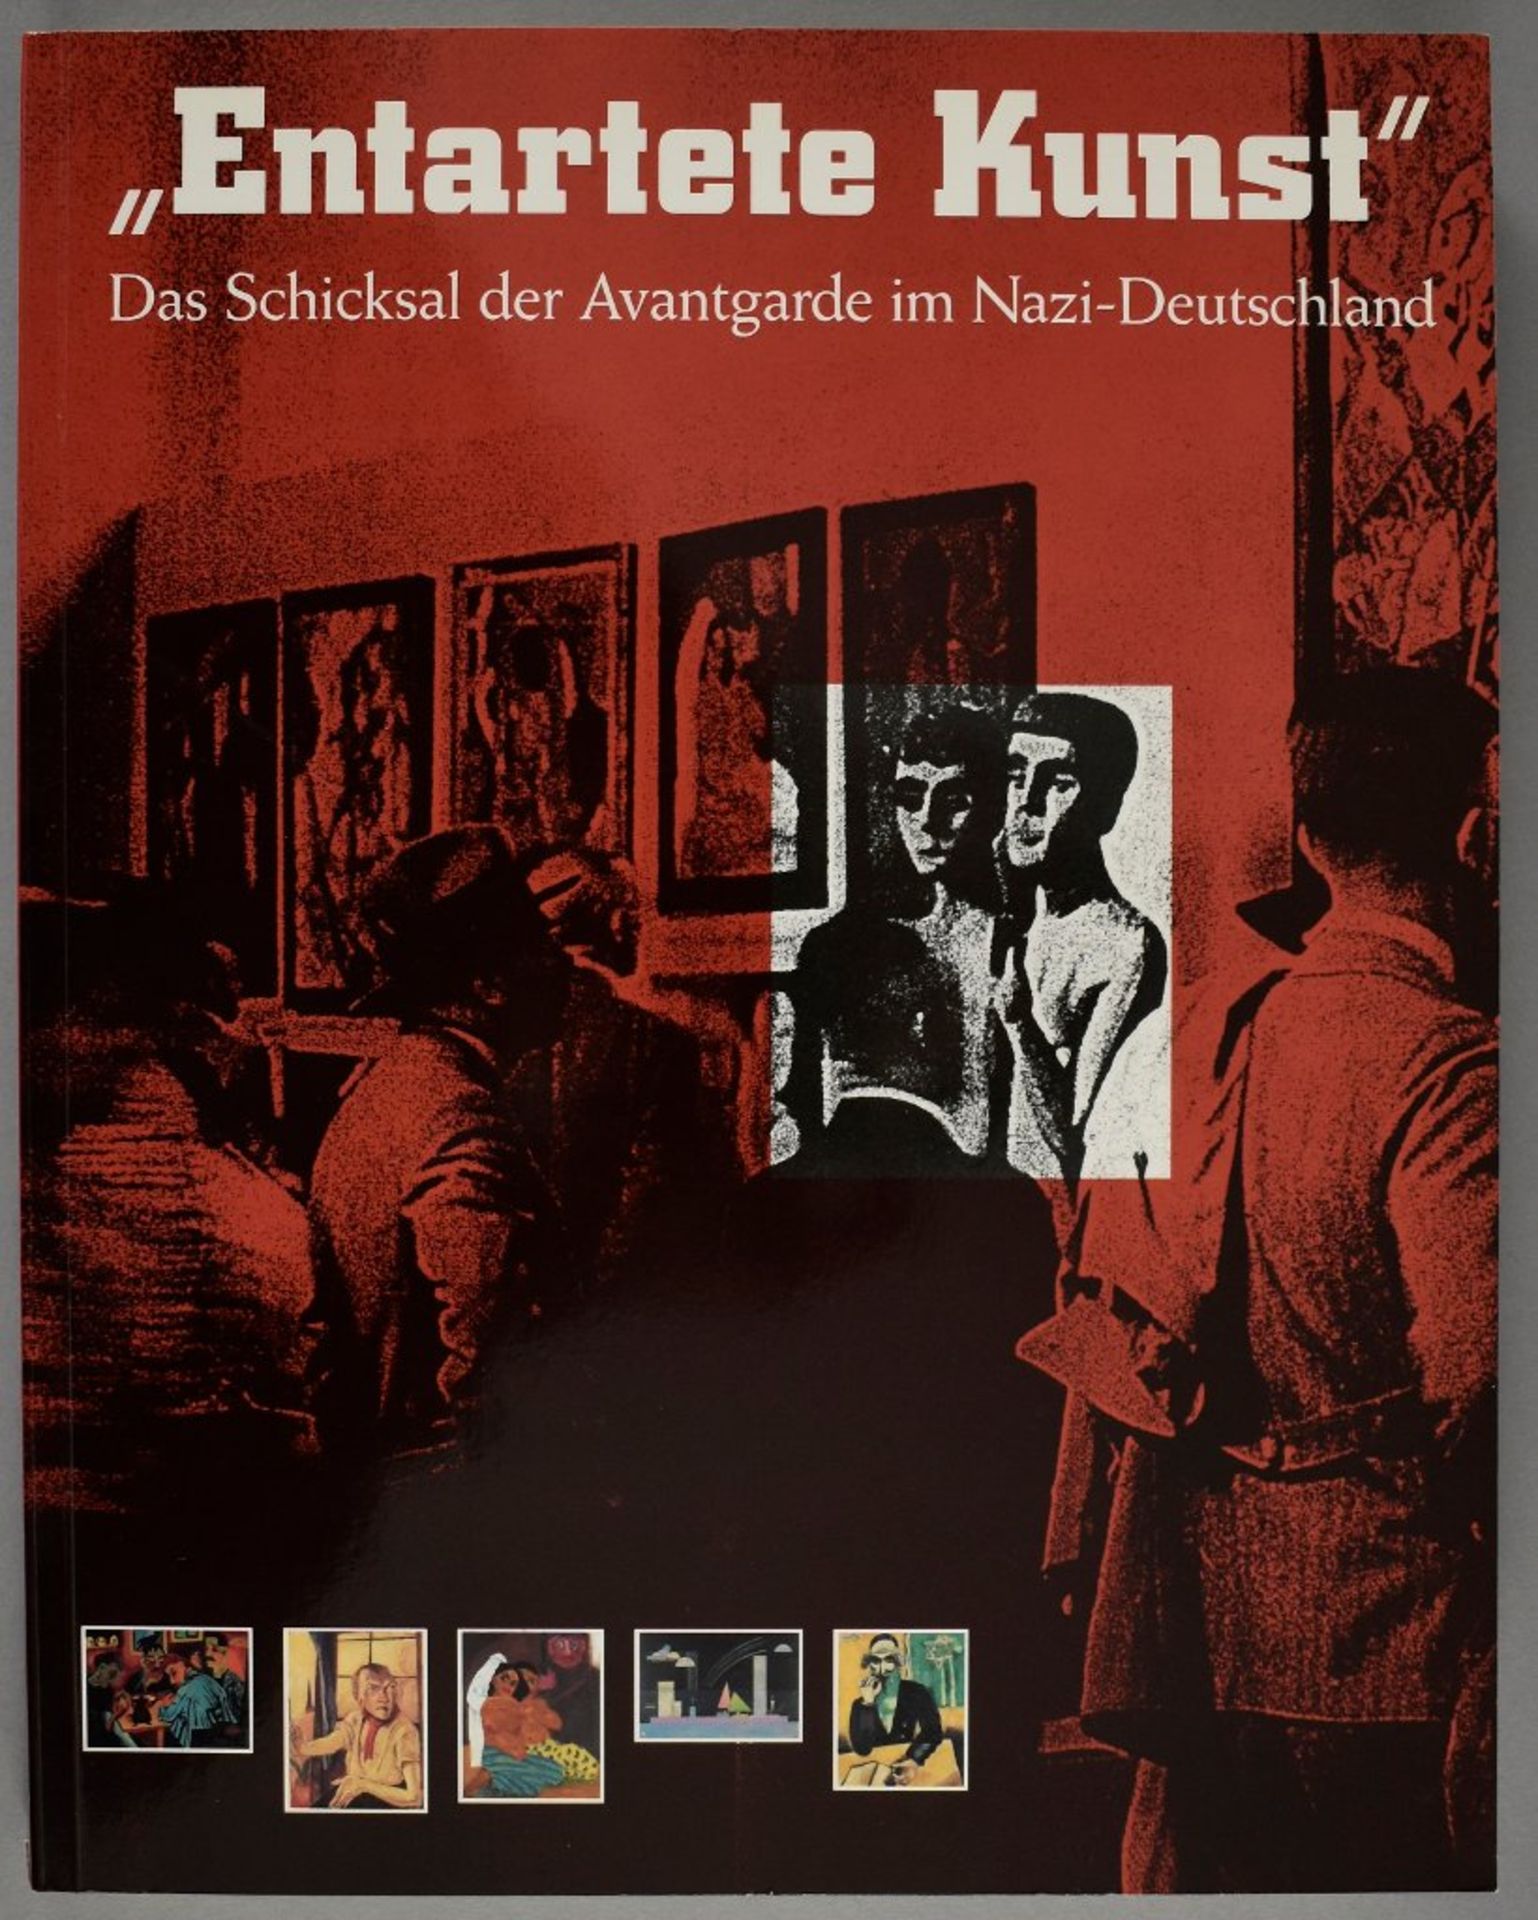 Barron, Stephanie. "Entartete Kunst". Das Schicksal der Avantgarde im Nazi-Deutschland. Los